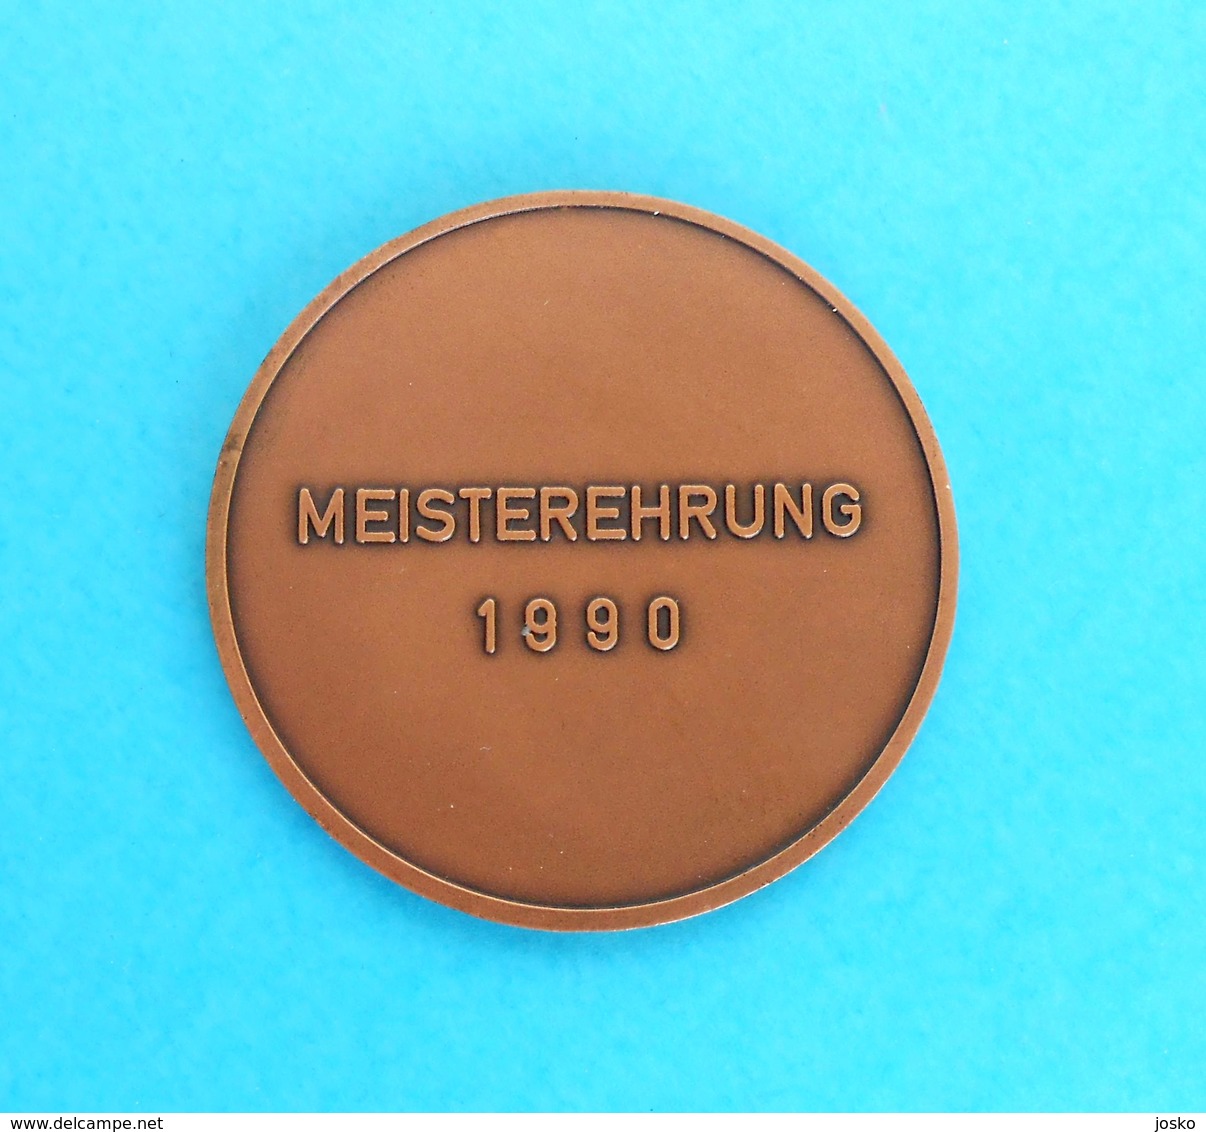 ARCHERY & SHOOTING Germany Medal Württembergischer Schützenverband 1850 EV Stuttgart, Deutschland * Tir à L'arc Tournage - Bogenschiessen